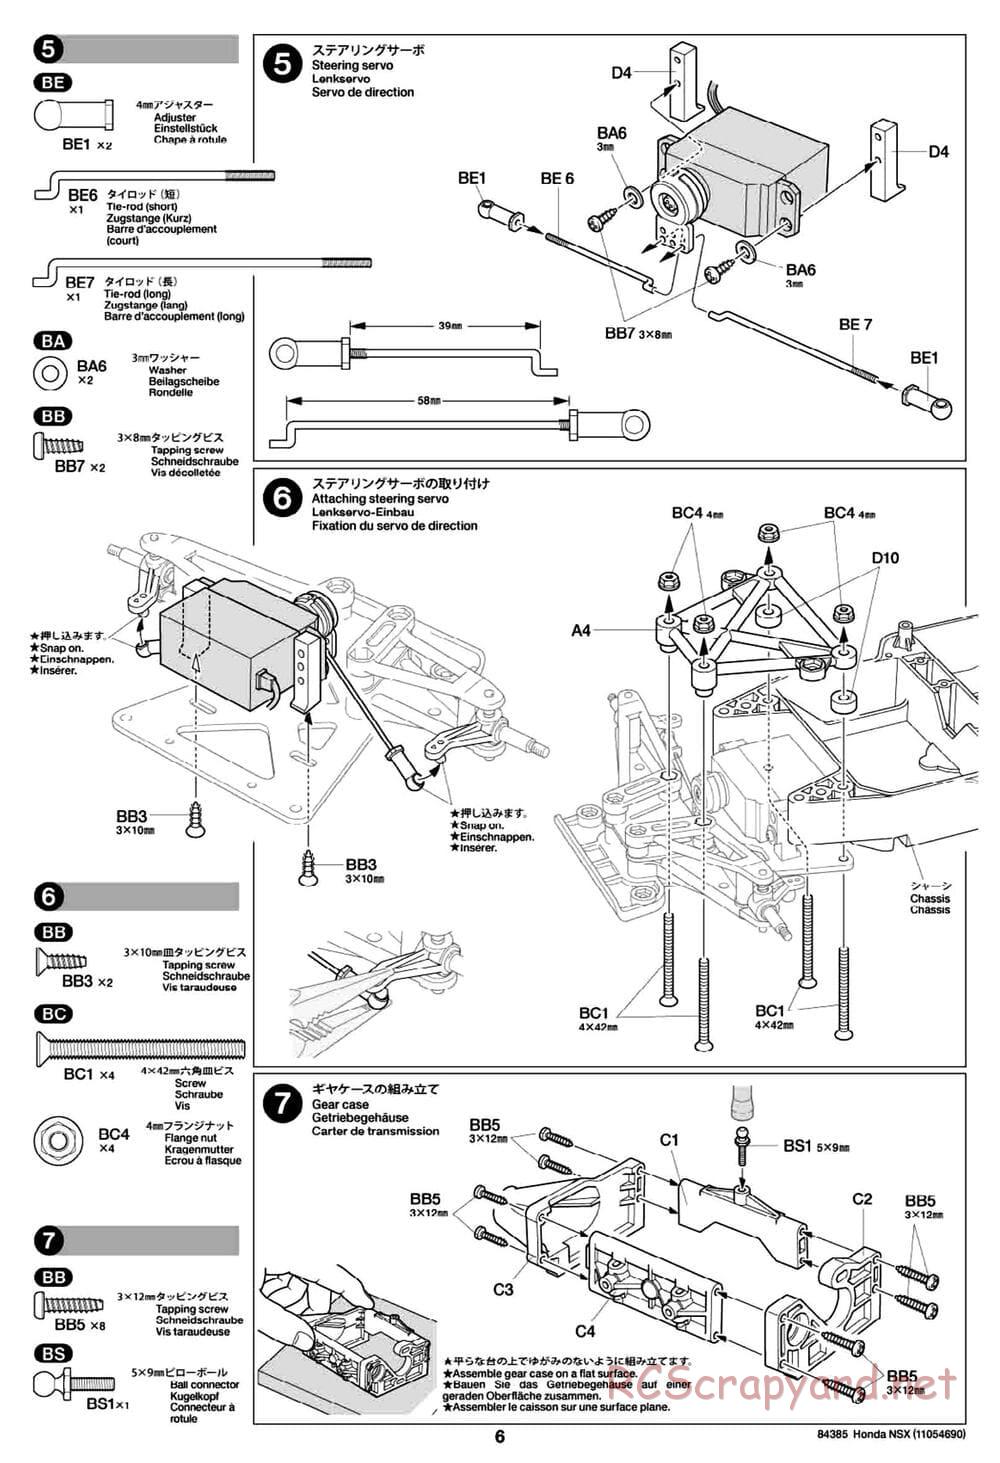 Tamiya - Honda NSX - Group-C Chassis - Manual - Page 6